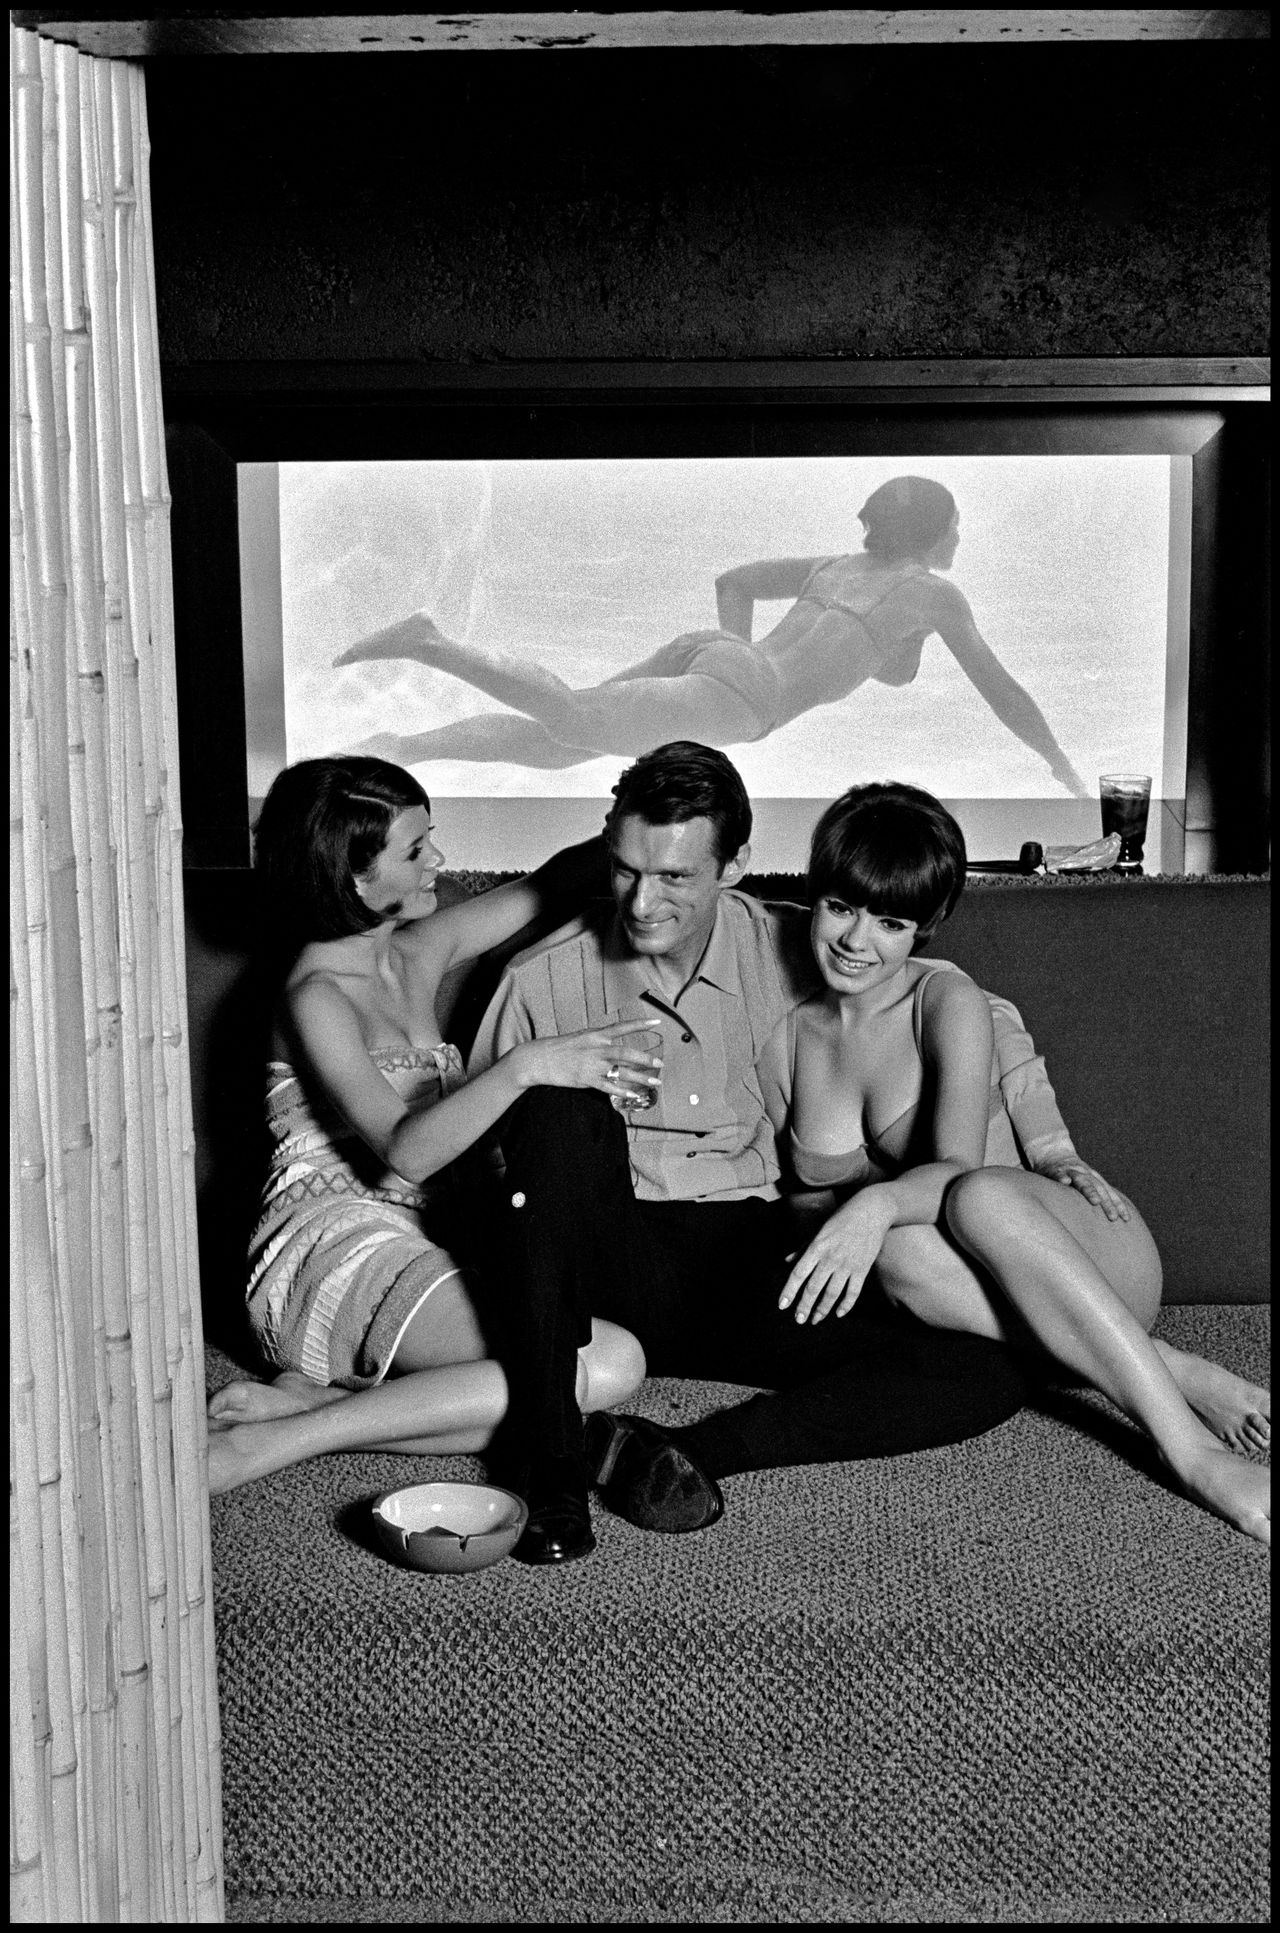 Burt Glinn, "Hugh Hefner in the Chicago Playboy mansion," Chicago, IL., USA, 1966